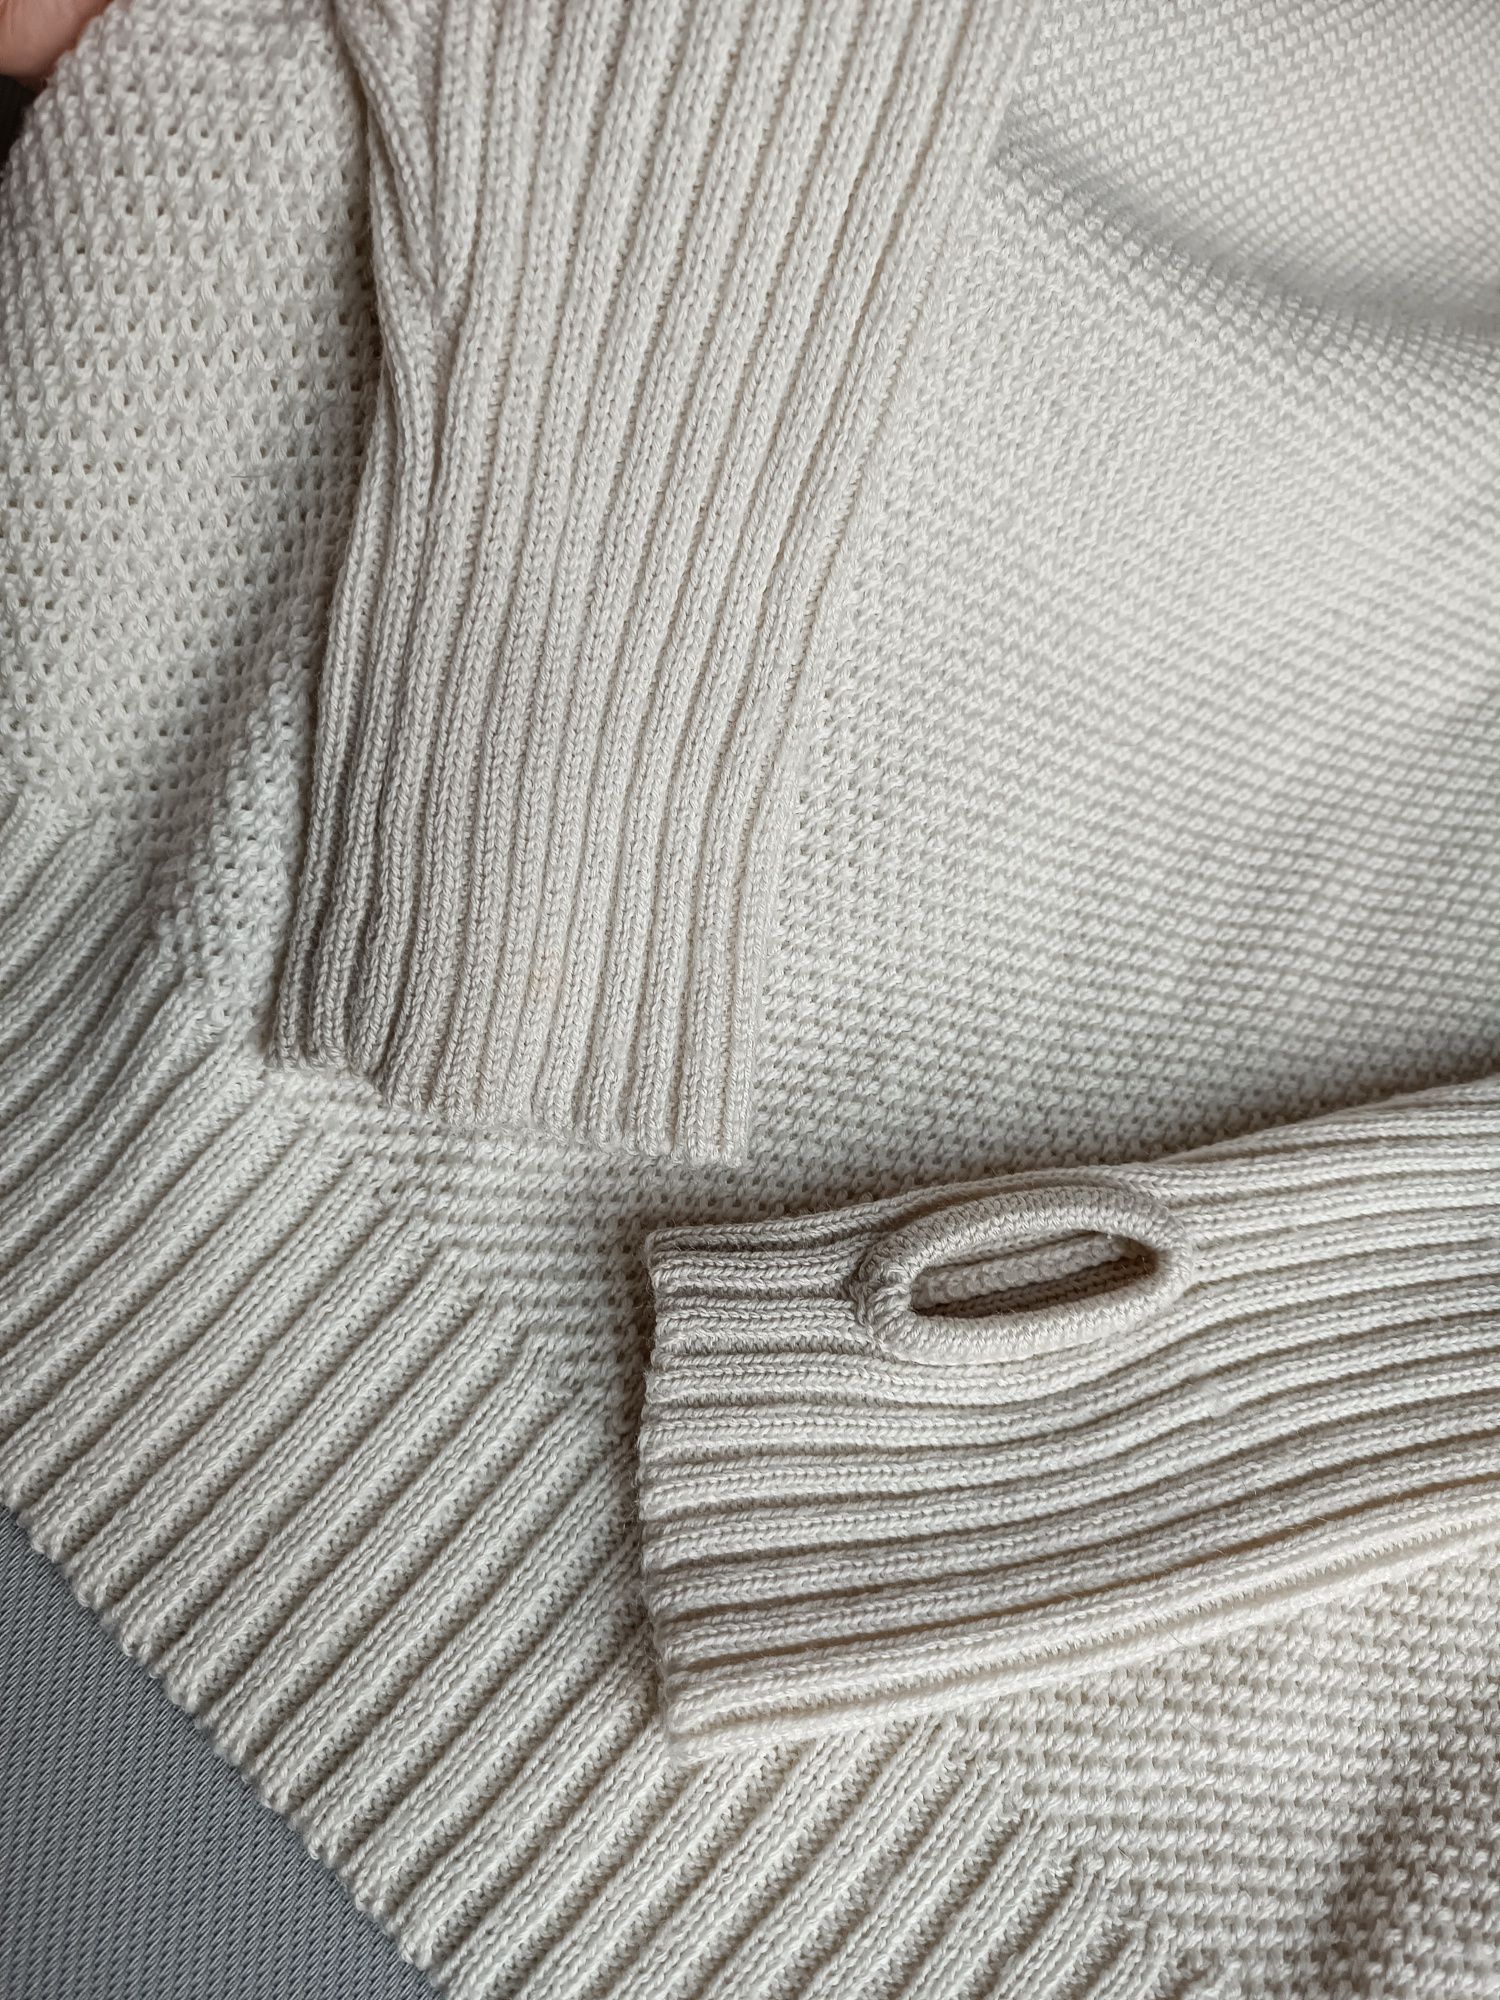 Sweter golf daehlie damski rozmiar L kremowy 50% wełna